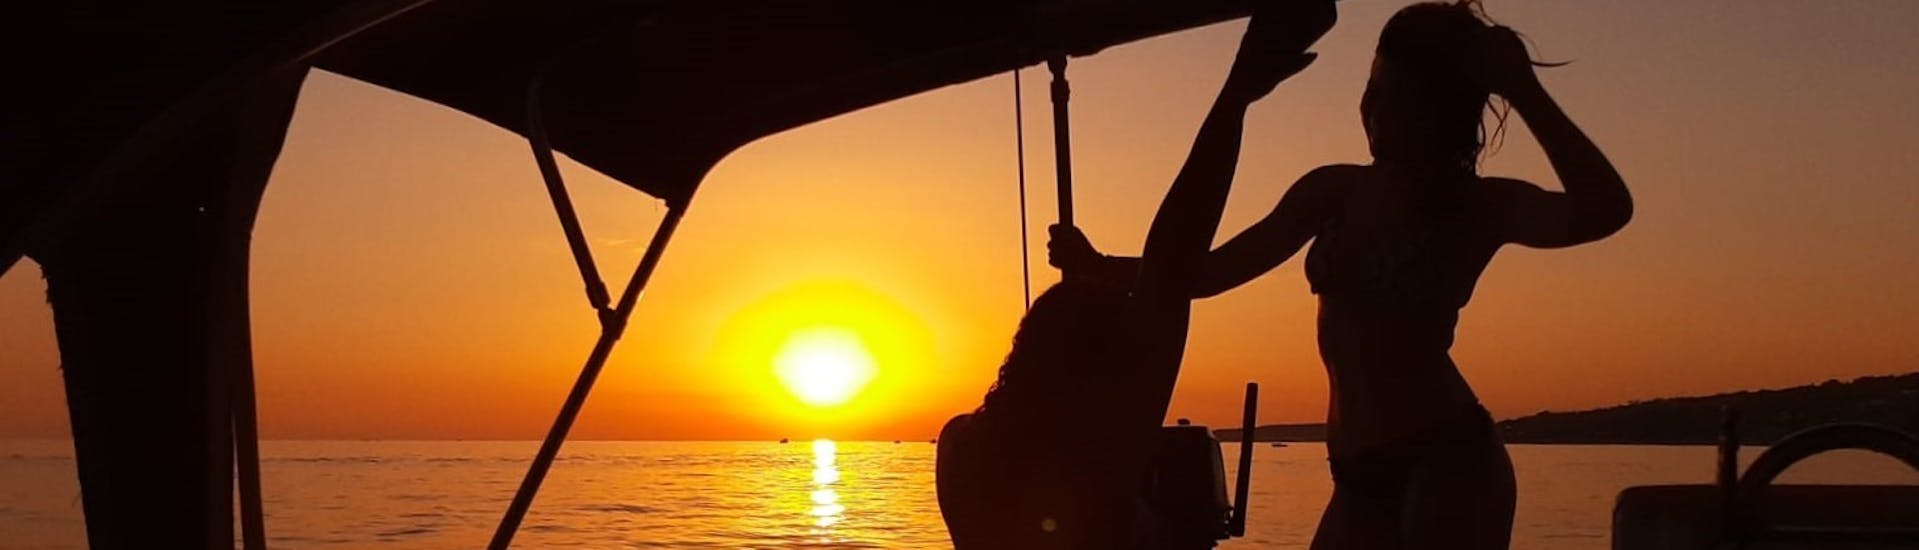 Coucher de soleil pendant l'excursion en voilier au coucher du soleil depuis Santa Maria di Leuca avec apéritif et arrêt baignade.